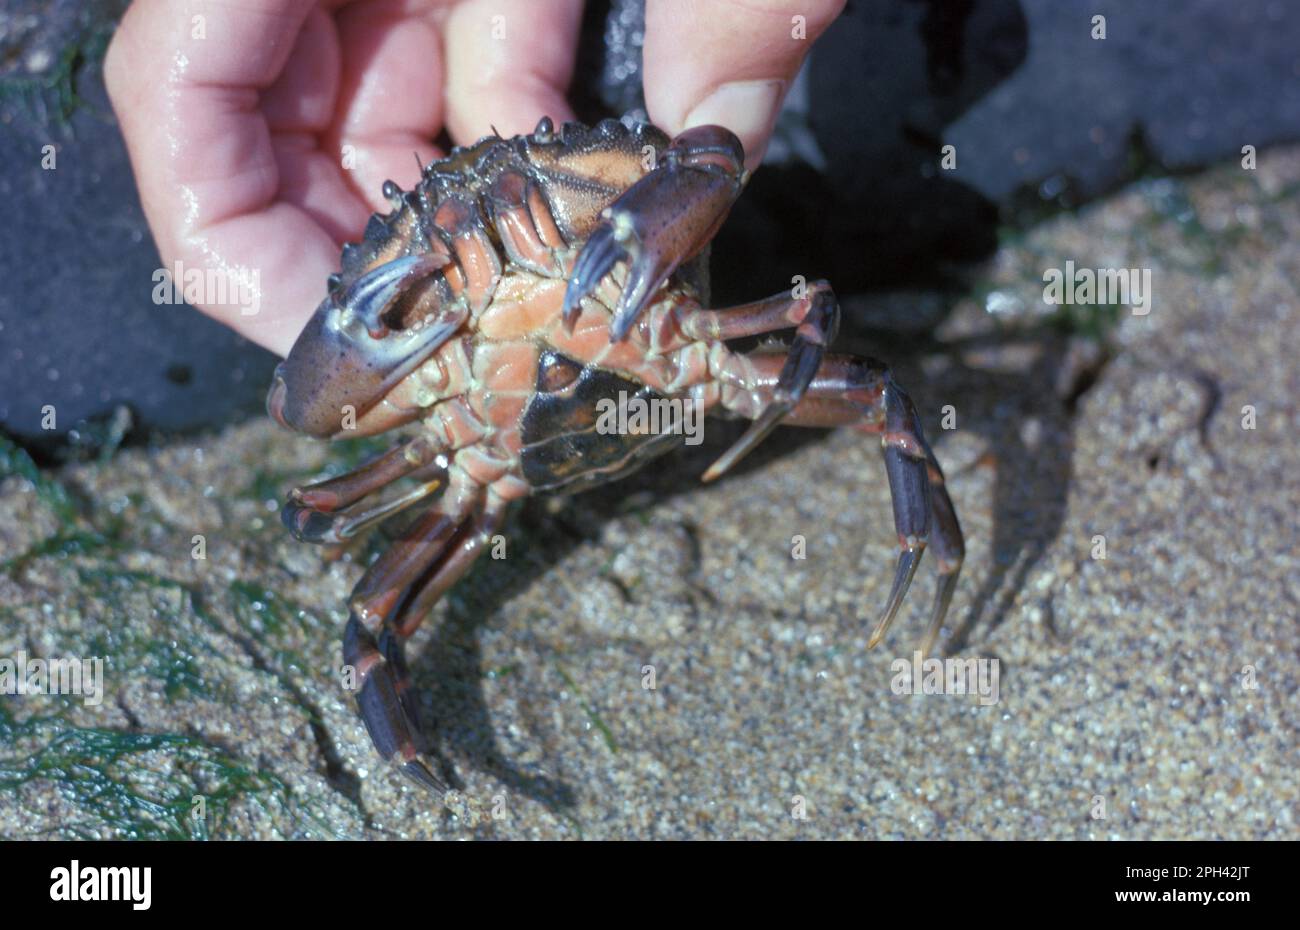 North Atlantic Beach Crab, North Atlantic Beach Crabs (Carcinus maenas), Other Animals, Crabs, Crustaceans, Animals, Shore Crab Female, underside Stock Photo